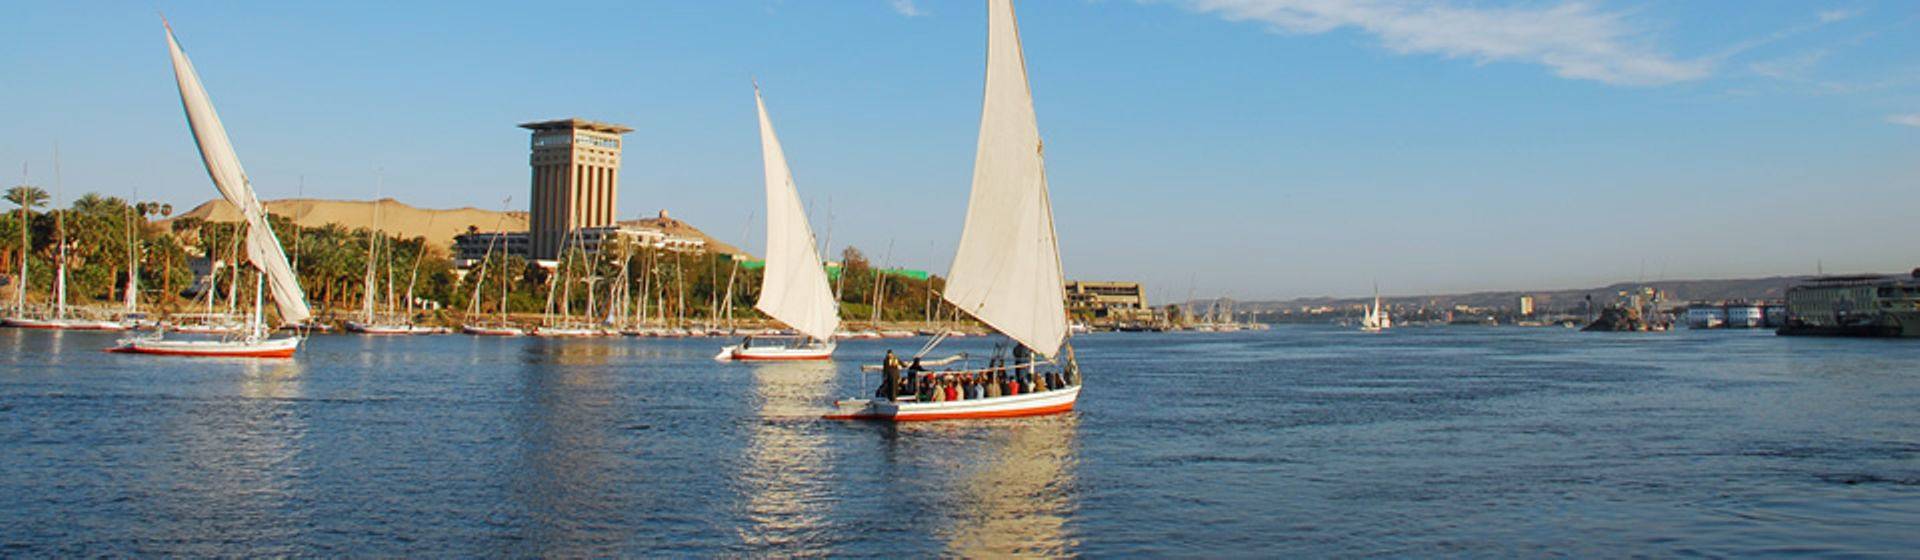 Holidays to Nile Cruise Image